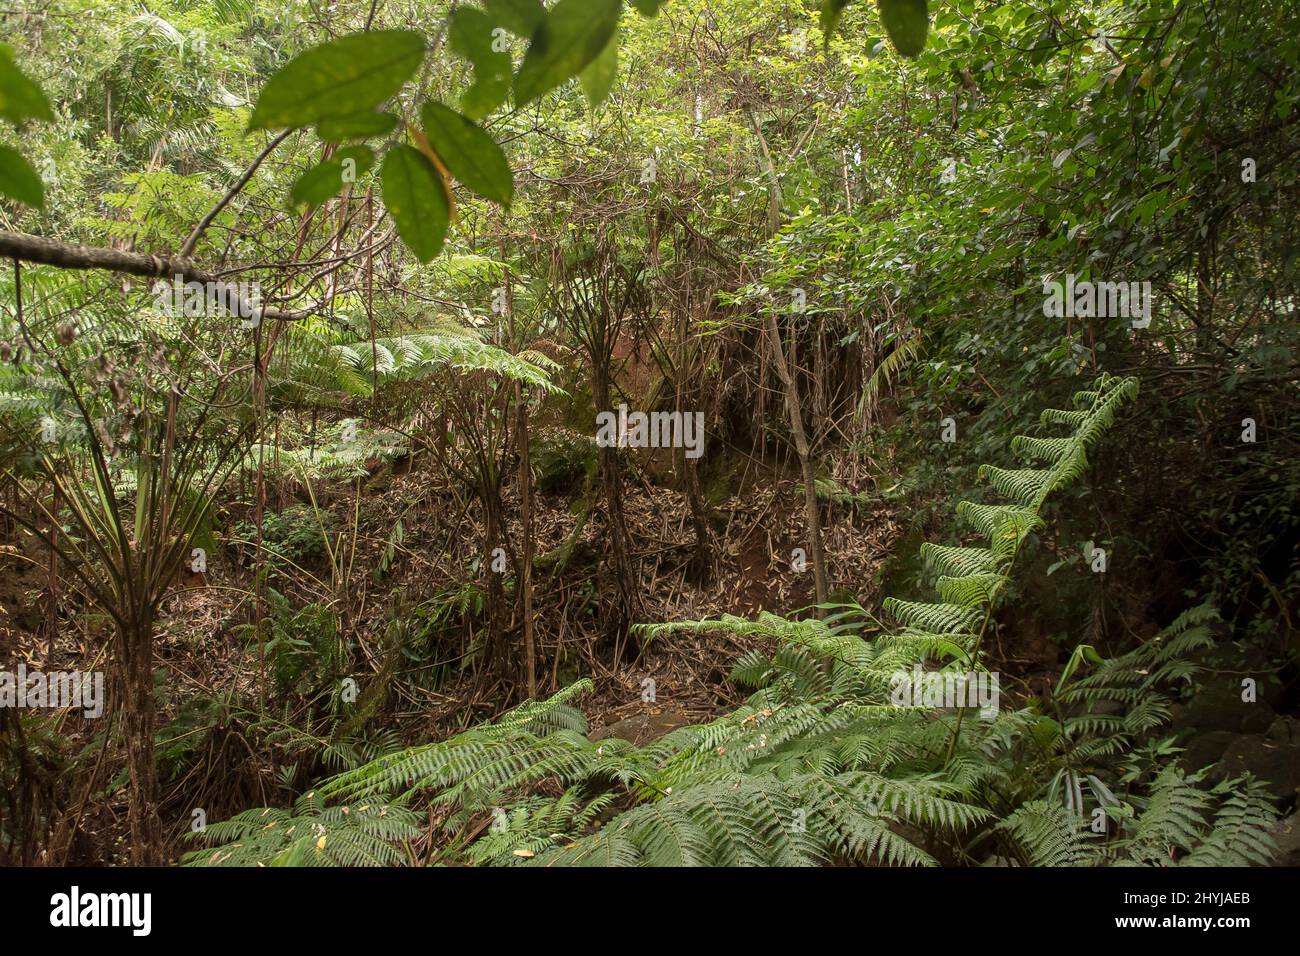 La scarsità di foresta subtropicale della pianura densa in un giorno d'estate piovoso in Queensland, Australia. Felci d'albero, Cyathea cooperi, foglie cadute. Foto Stock